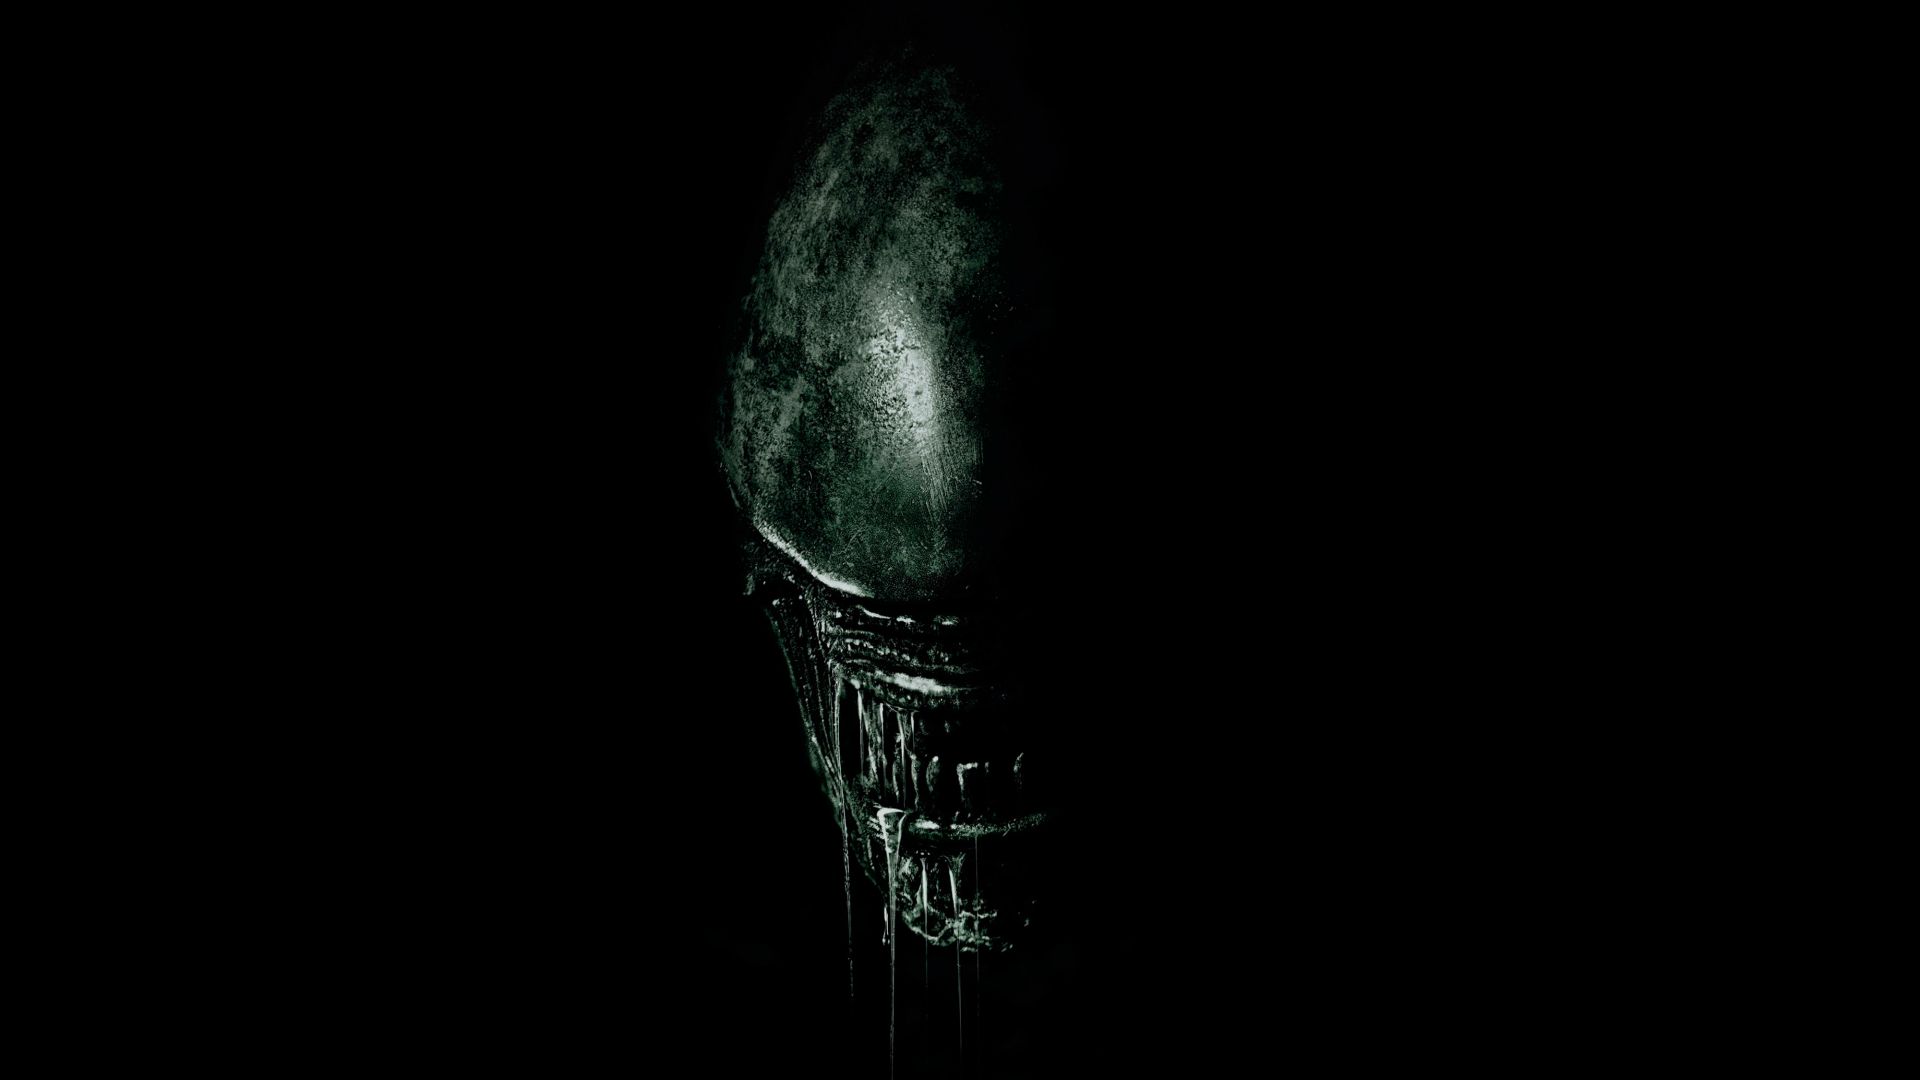 Wallpaper Alien: Covenant, 2017 movie, 4k